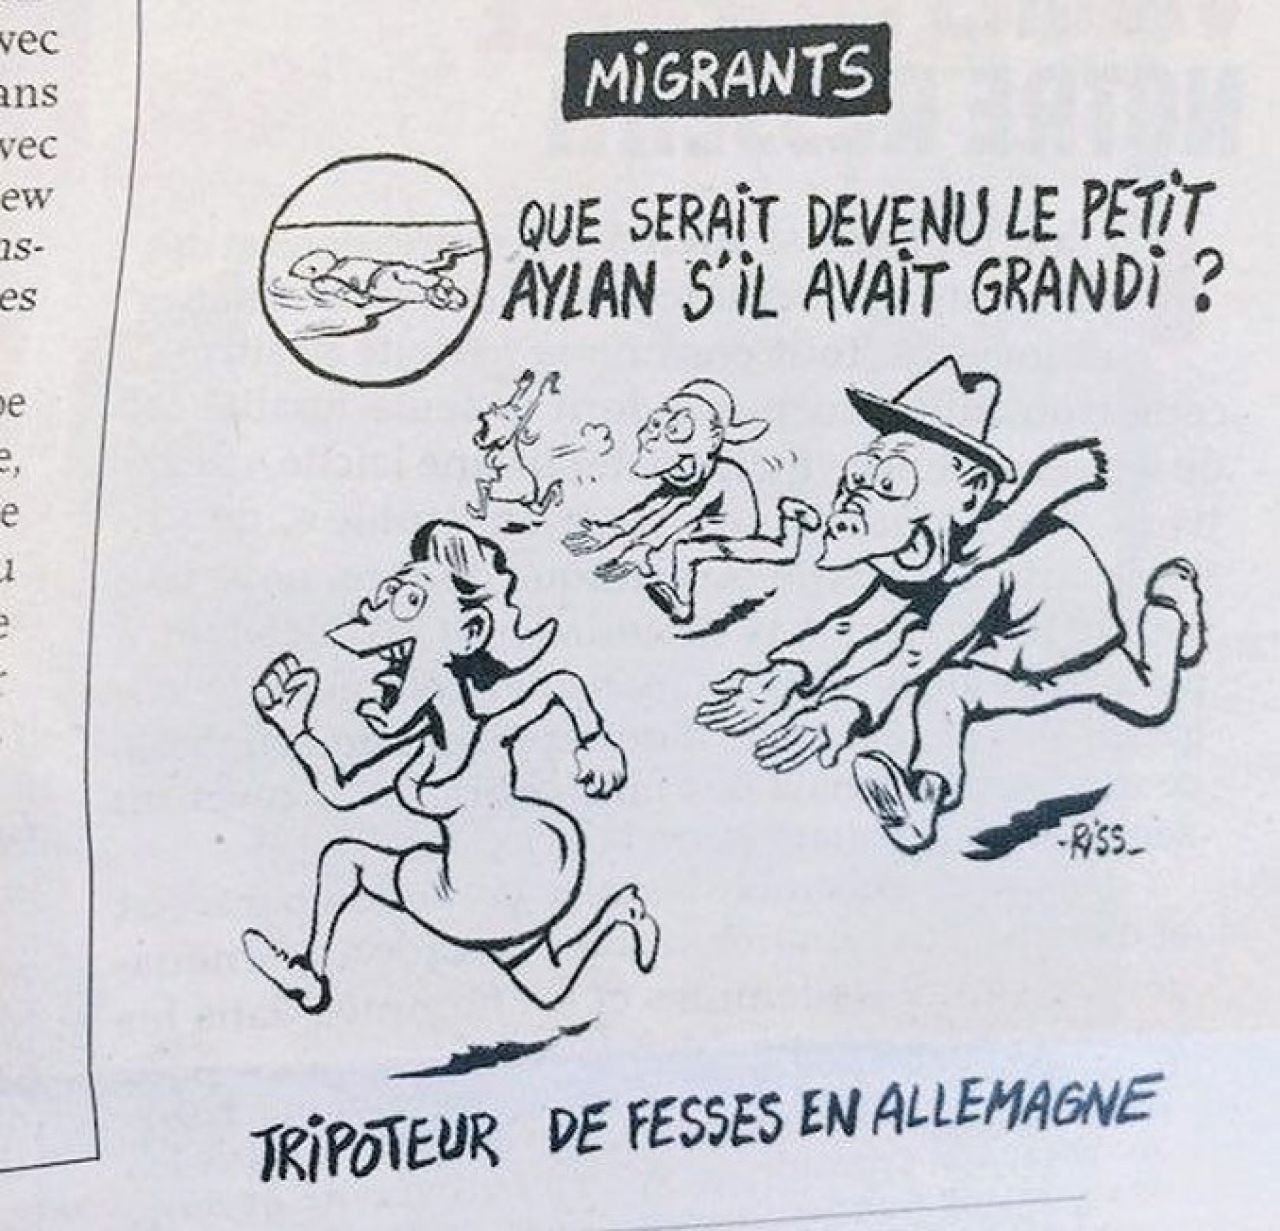 Charlie Hebdo šokira: Objavili karikaturu mališana Aylana kako izvodi seksualne napade